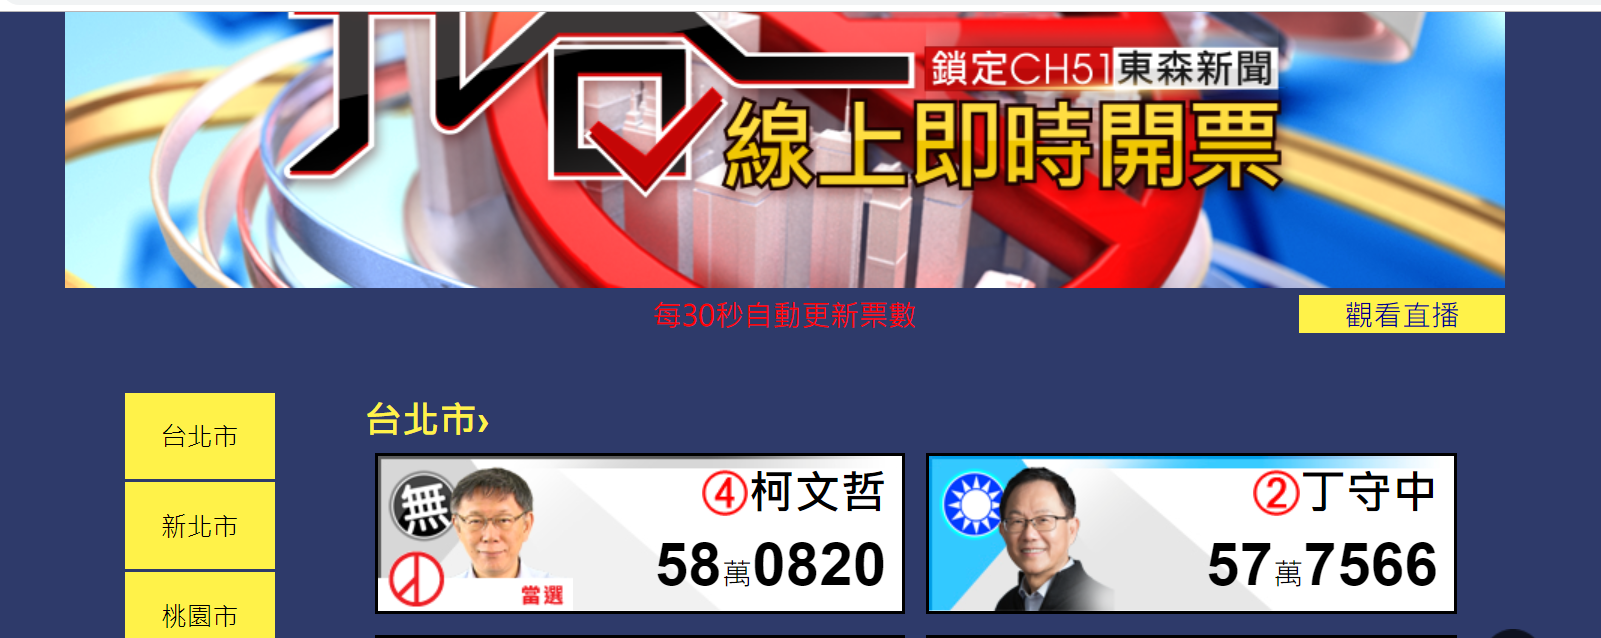 柯文哲以微弱优势连任台北市长 丁守中提结果无效诉讼